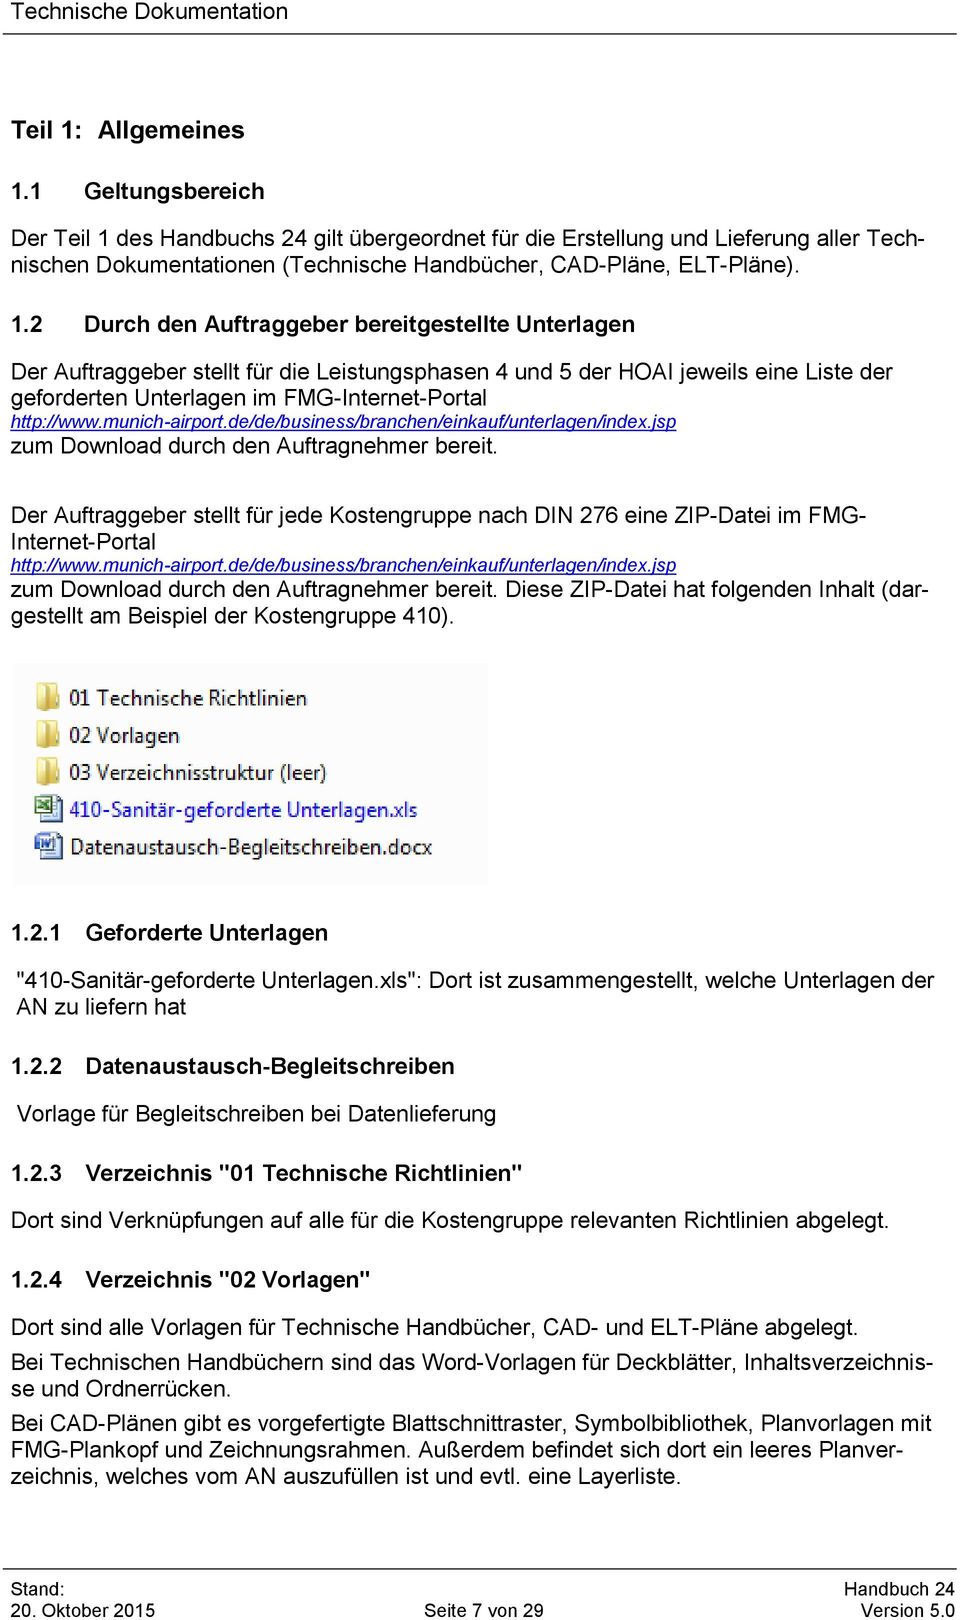 munich-airport.de/de/business/branchen/einkauf/unterlagen/index.jsp zum Download durch den Auftragnehmer bereit.